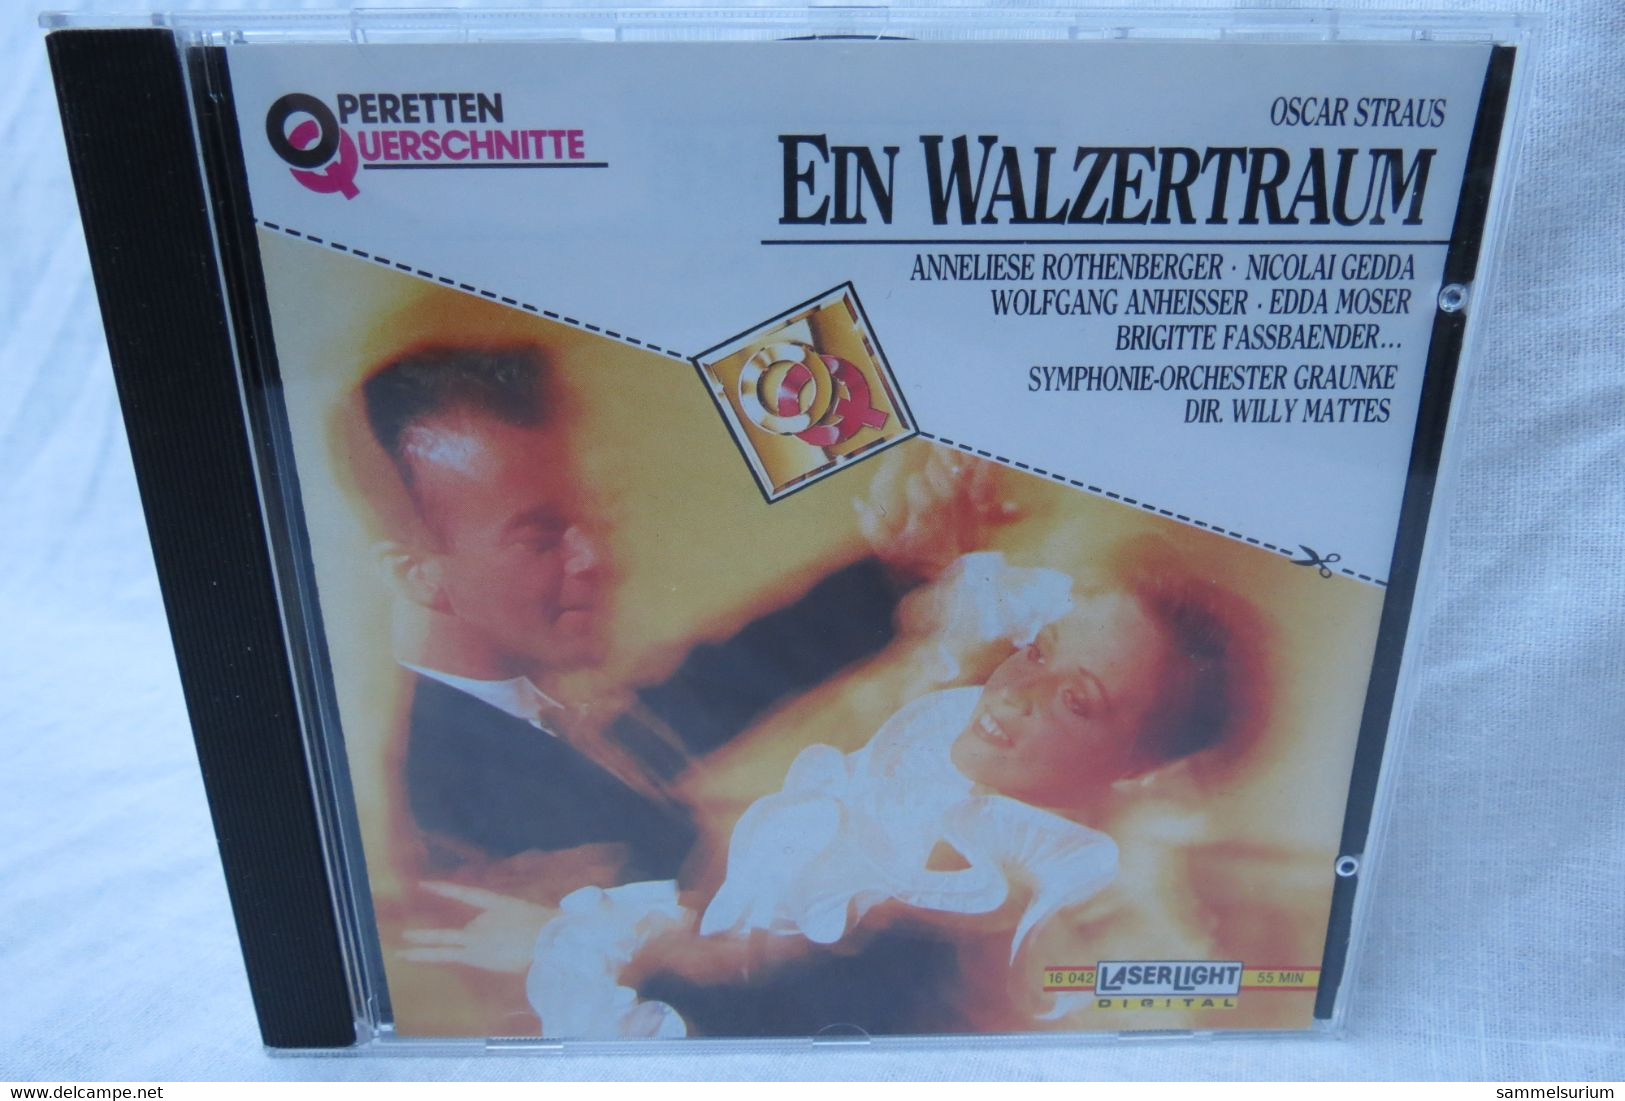 CD "Oscar Straus" Ein Walzertraum Aus Der Reihe Operetten Querschnitte - Opere